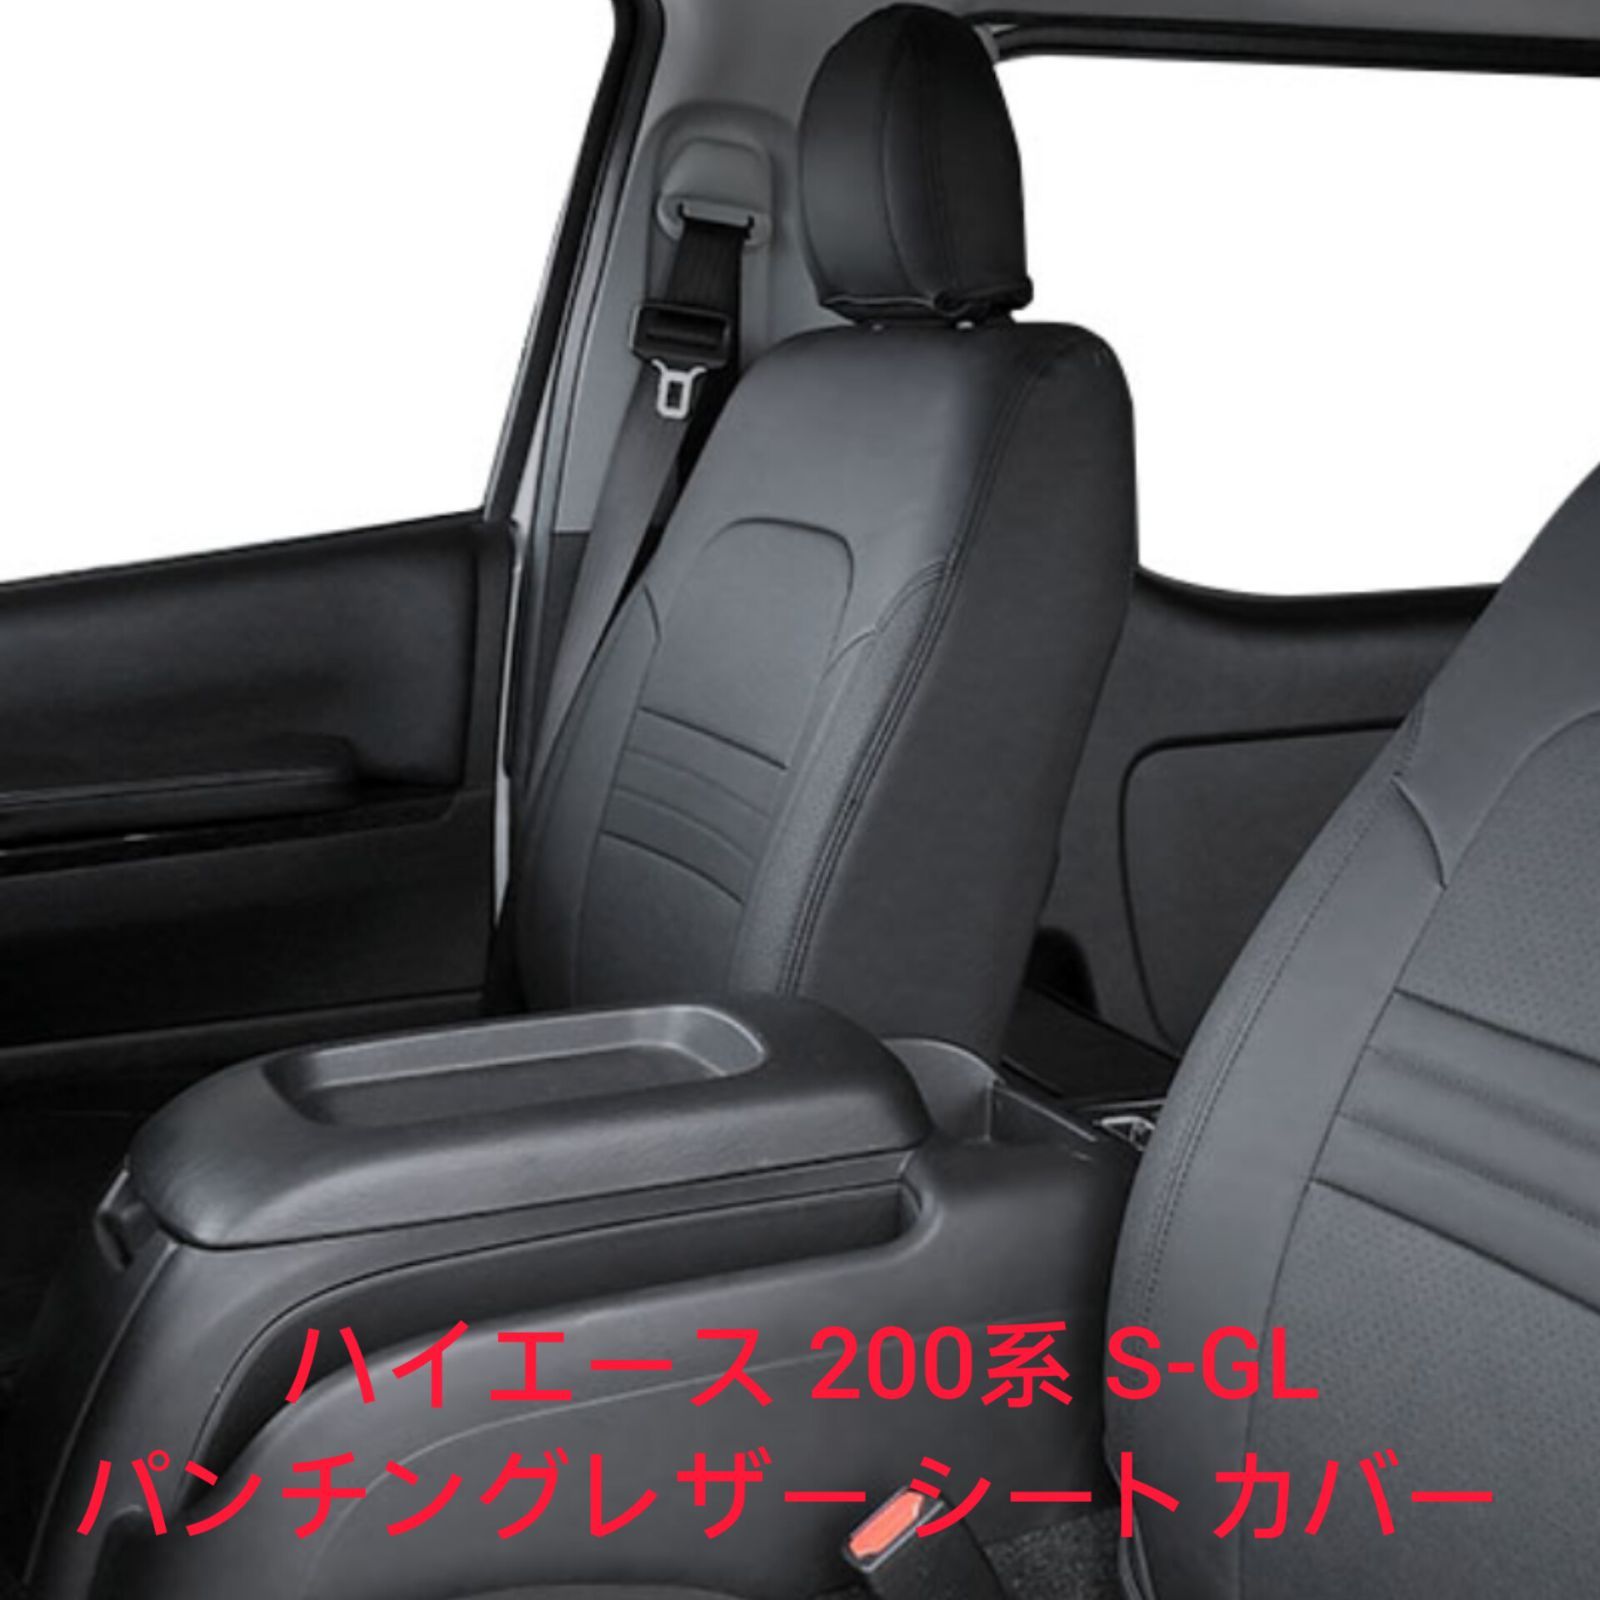 トヨタ ハイエース200系 S-GL専用 シートカバー(パンチングレザーブラック